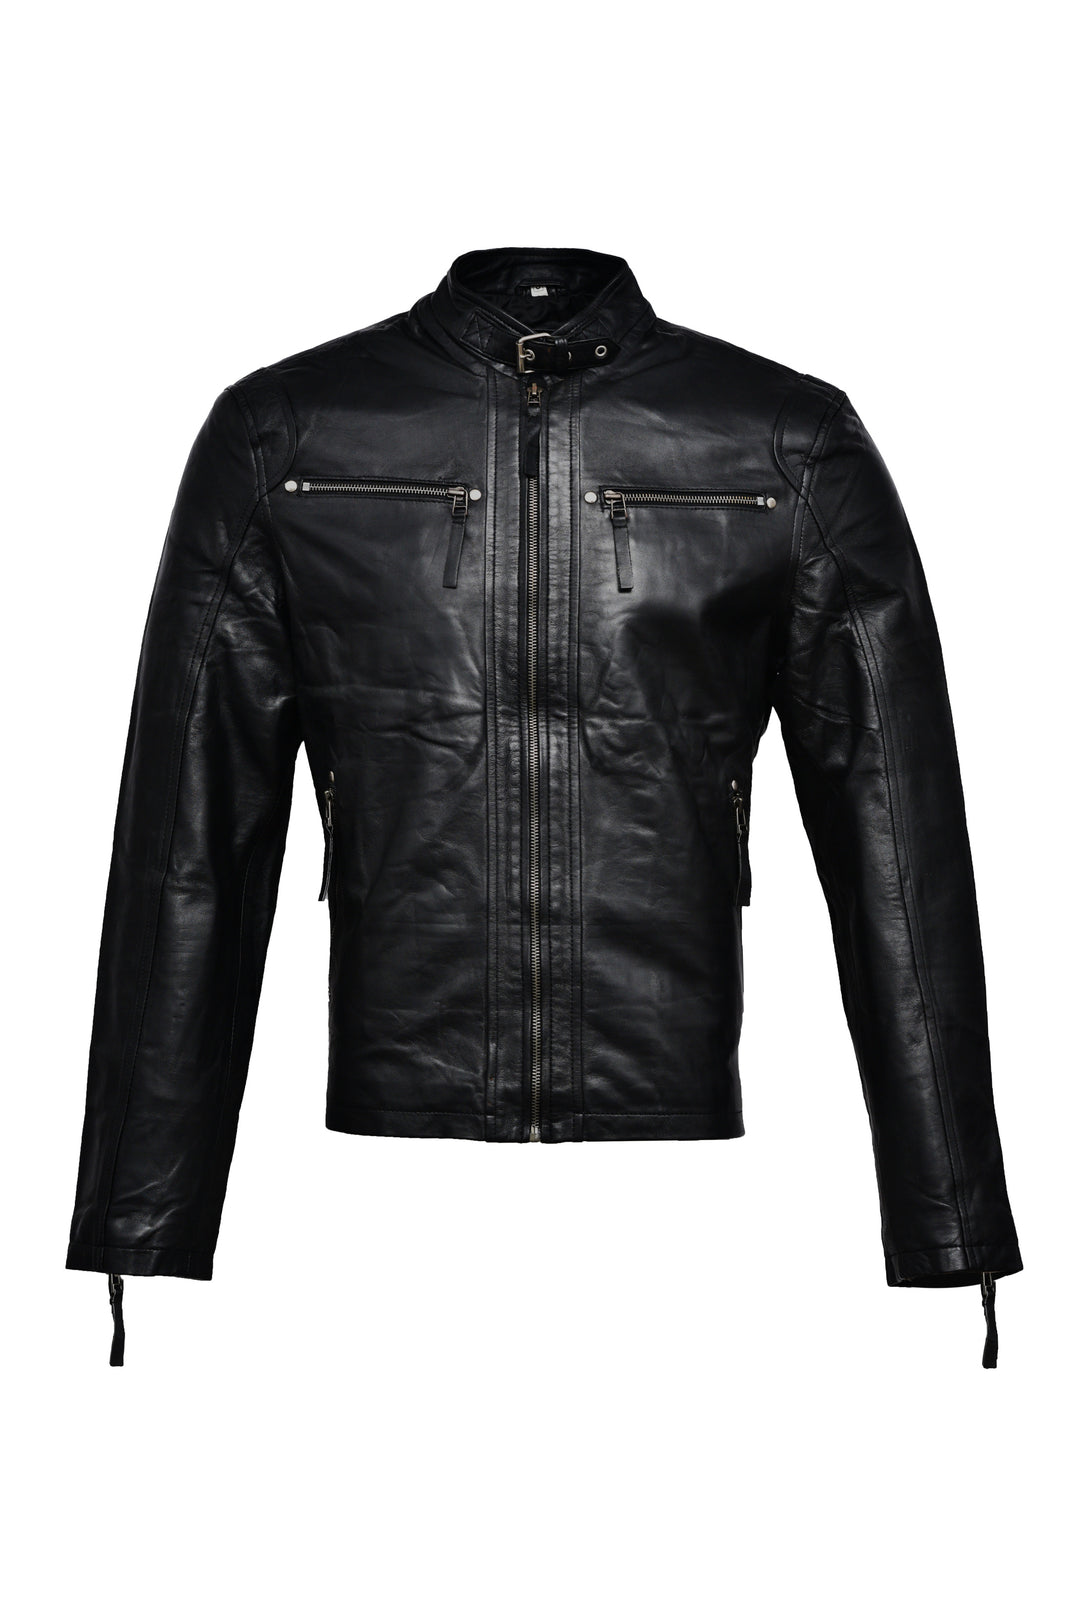 Hemsworth Black Bomber Leather Jacket